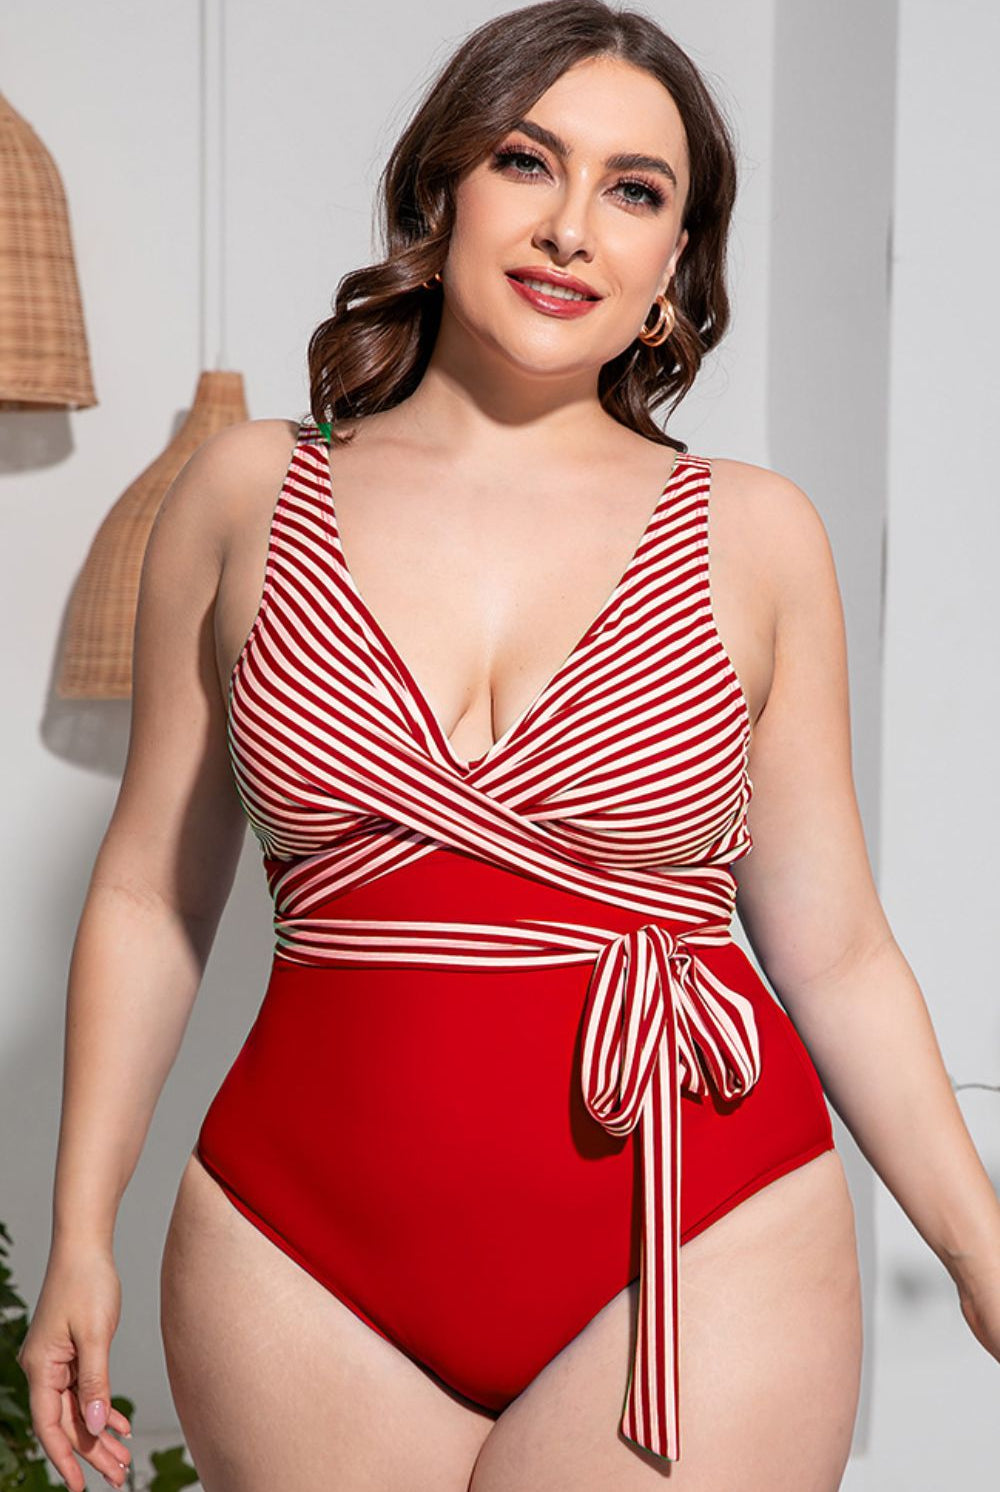 Gray No Caption Needed Plus Size Striped Tie-Waist One-Piece Swimsuit Swimwear